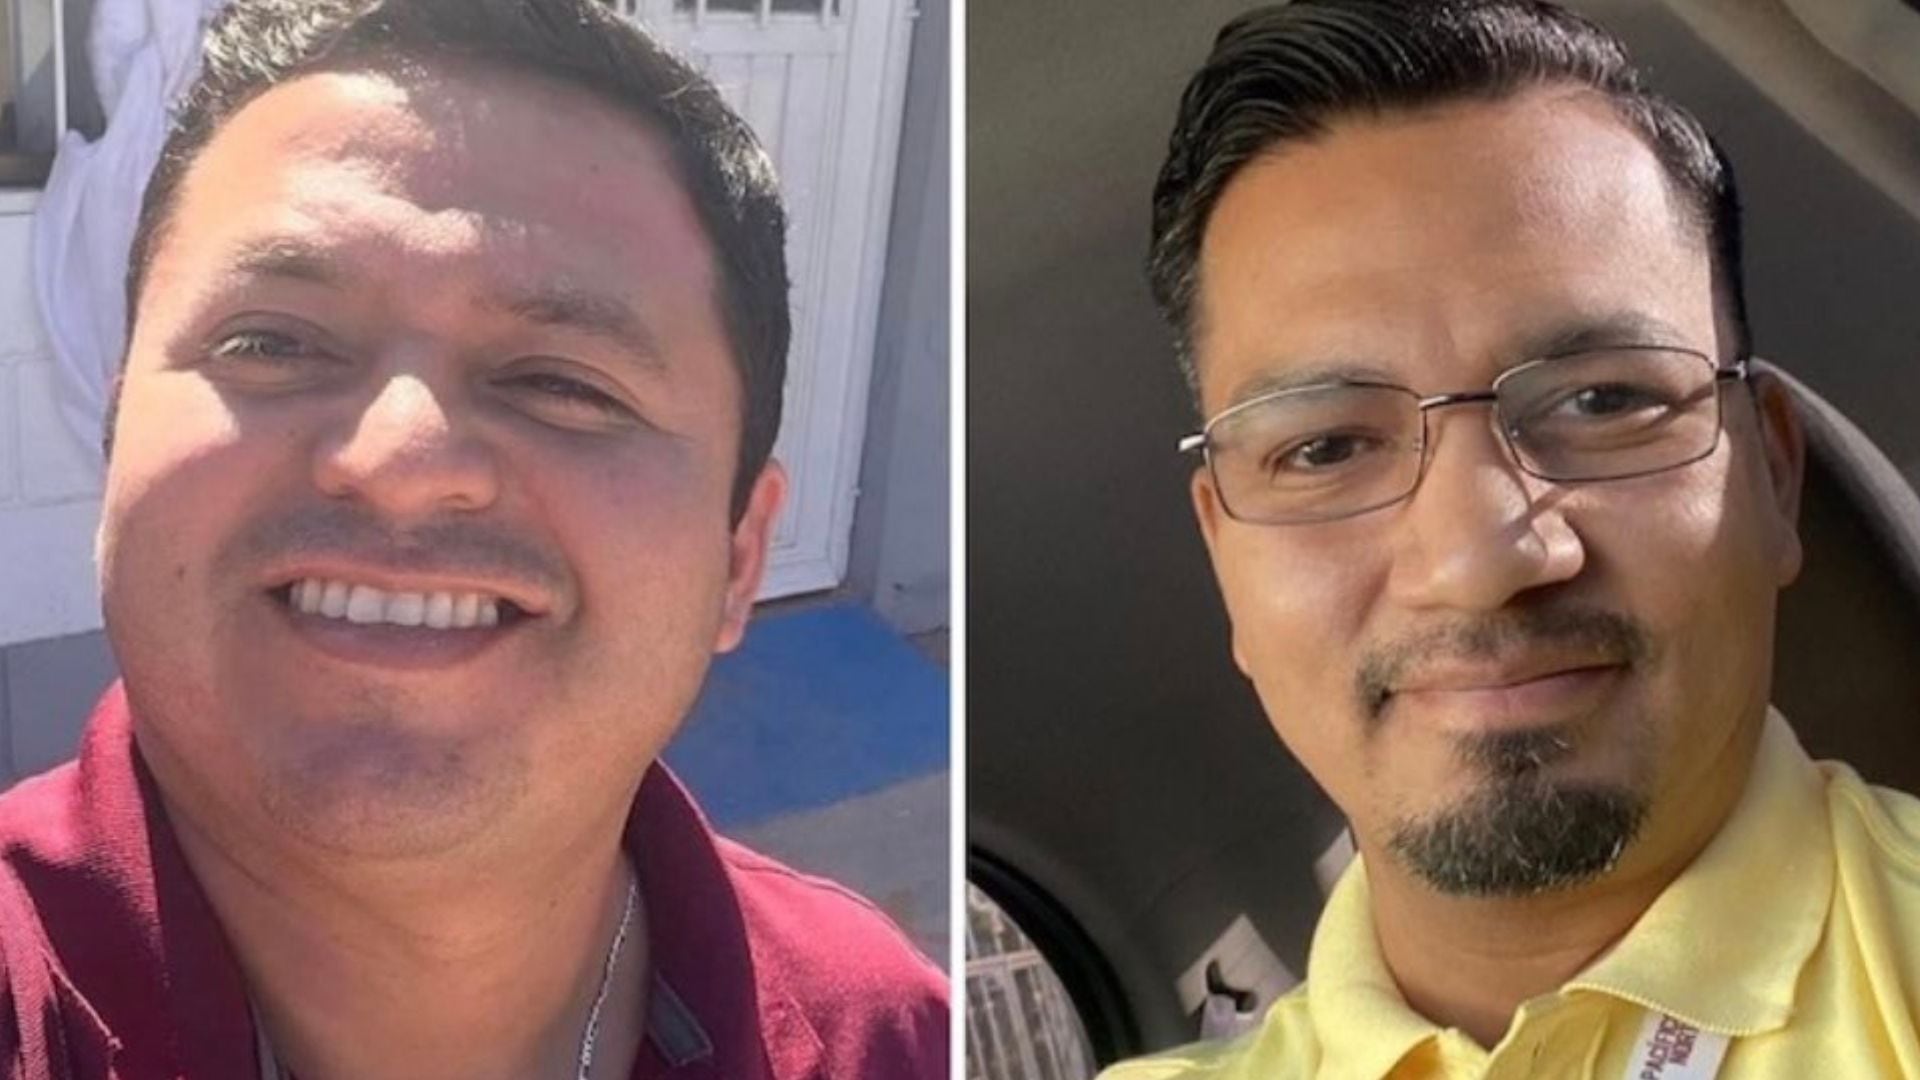 Ambos hombres fueron captados en video durante un interrogatorio. (Twitter/@michelleriveraa)